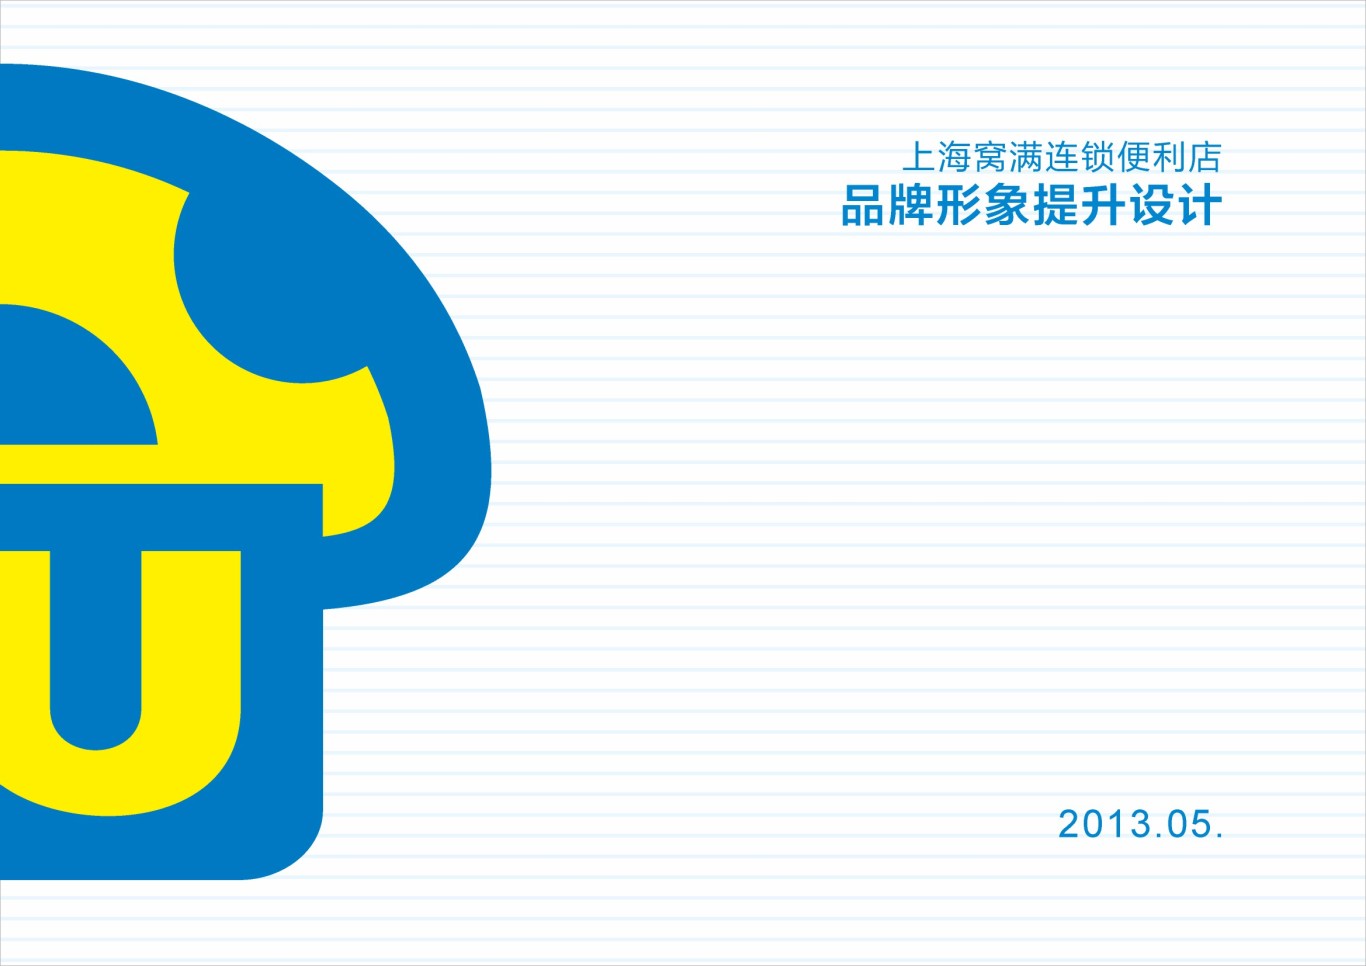 上海窝满连锁便利店品牌形象设计图0